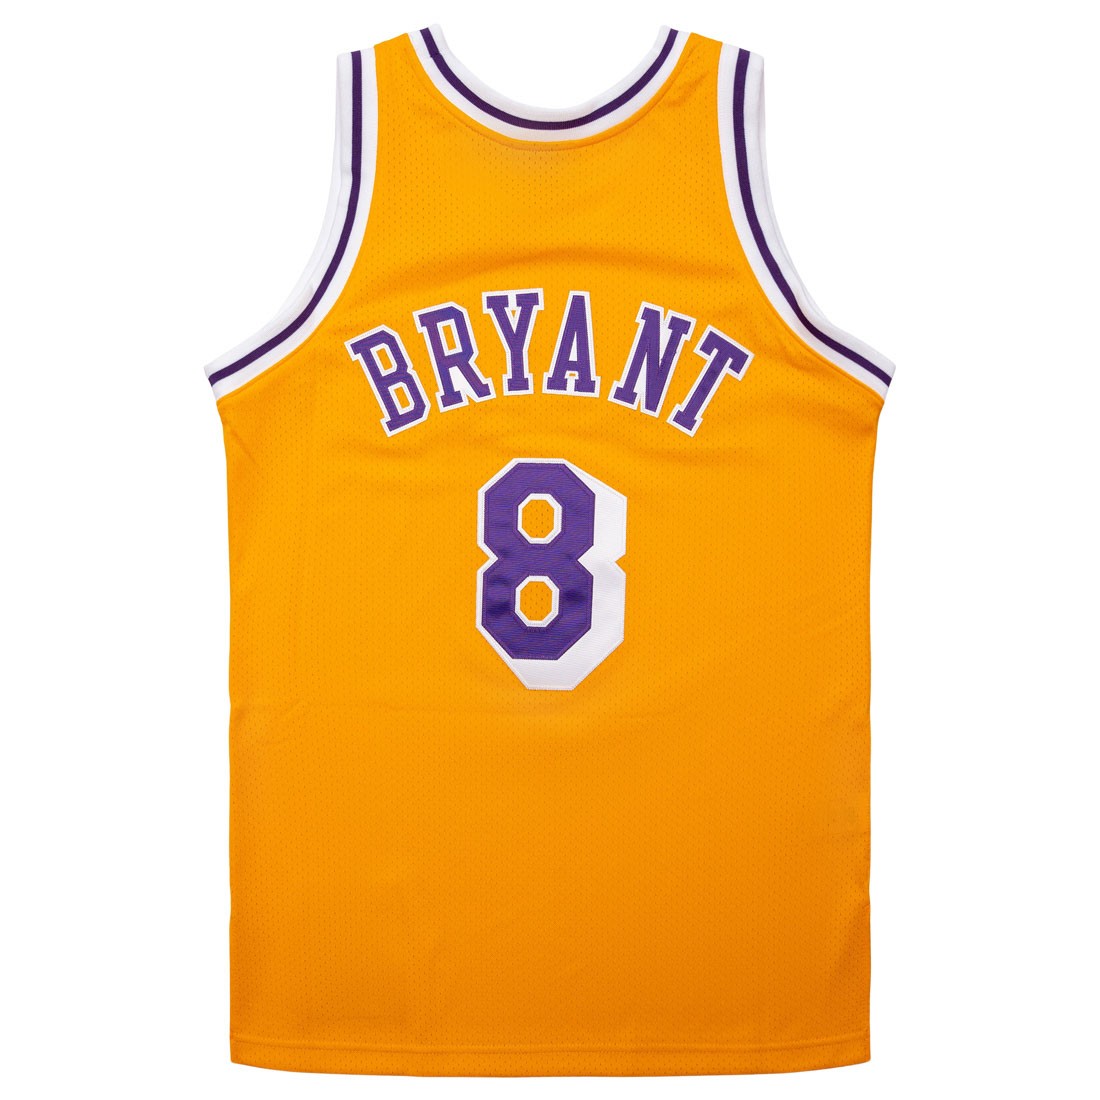 Kobe Bryant Apparel, Kobe Bryant Jerseys